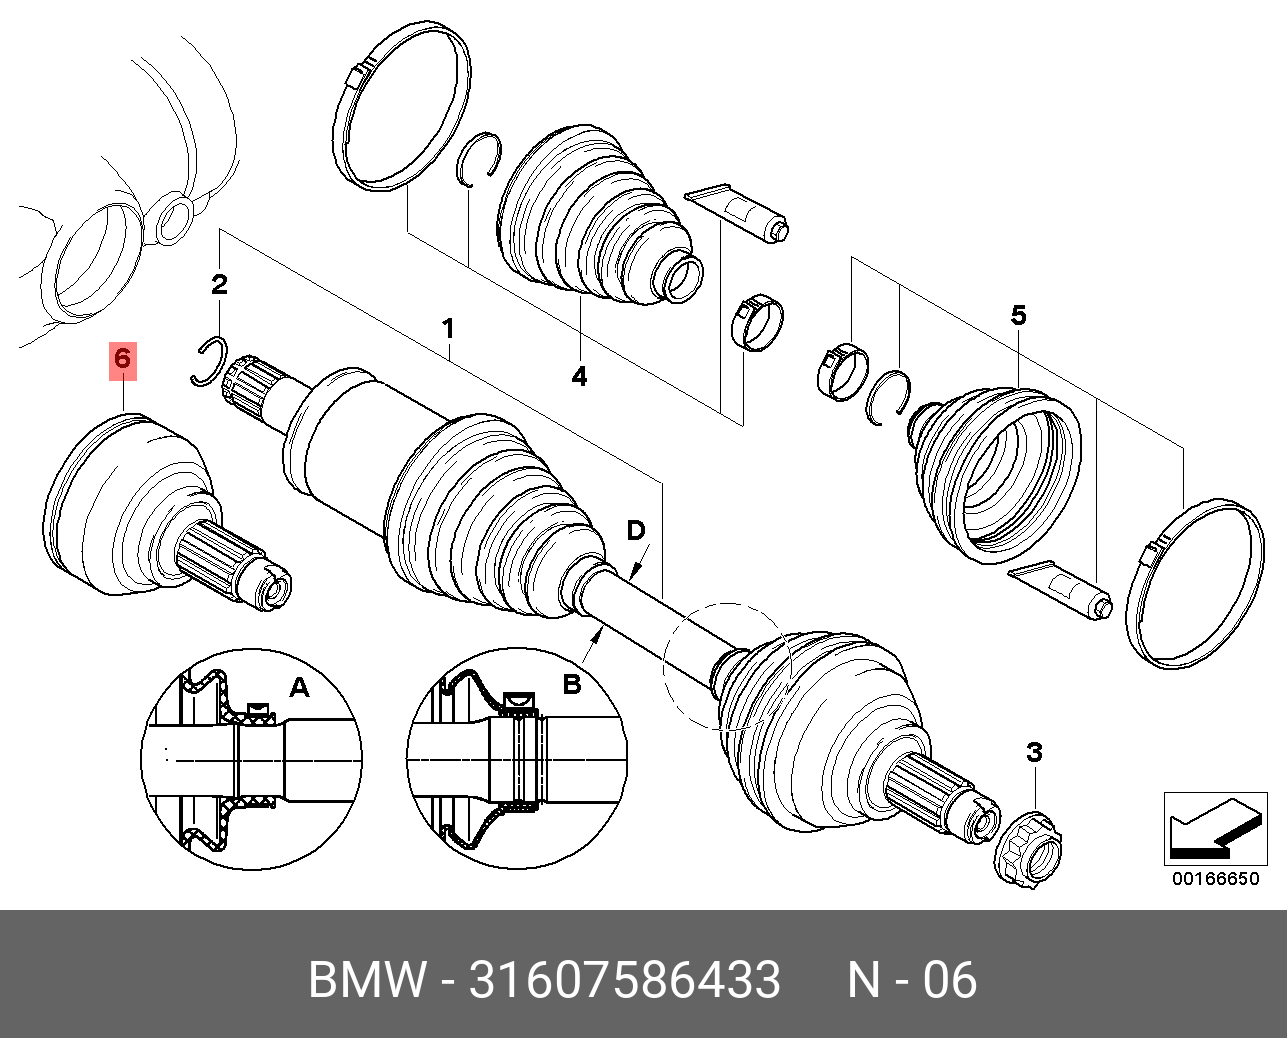 Привод х5 е70. Привод передний БМВ х5 е70. BMW x5 e70 передний привод. Привод передний BMW x3 e83. Передний левый привод BMW x5 e53.